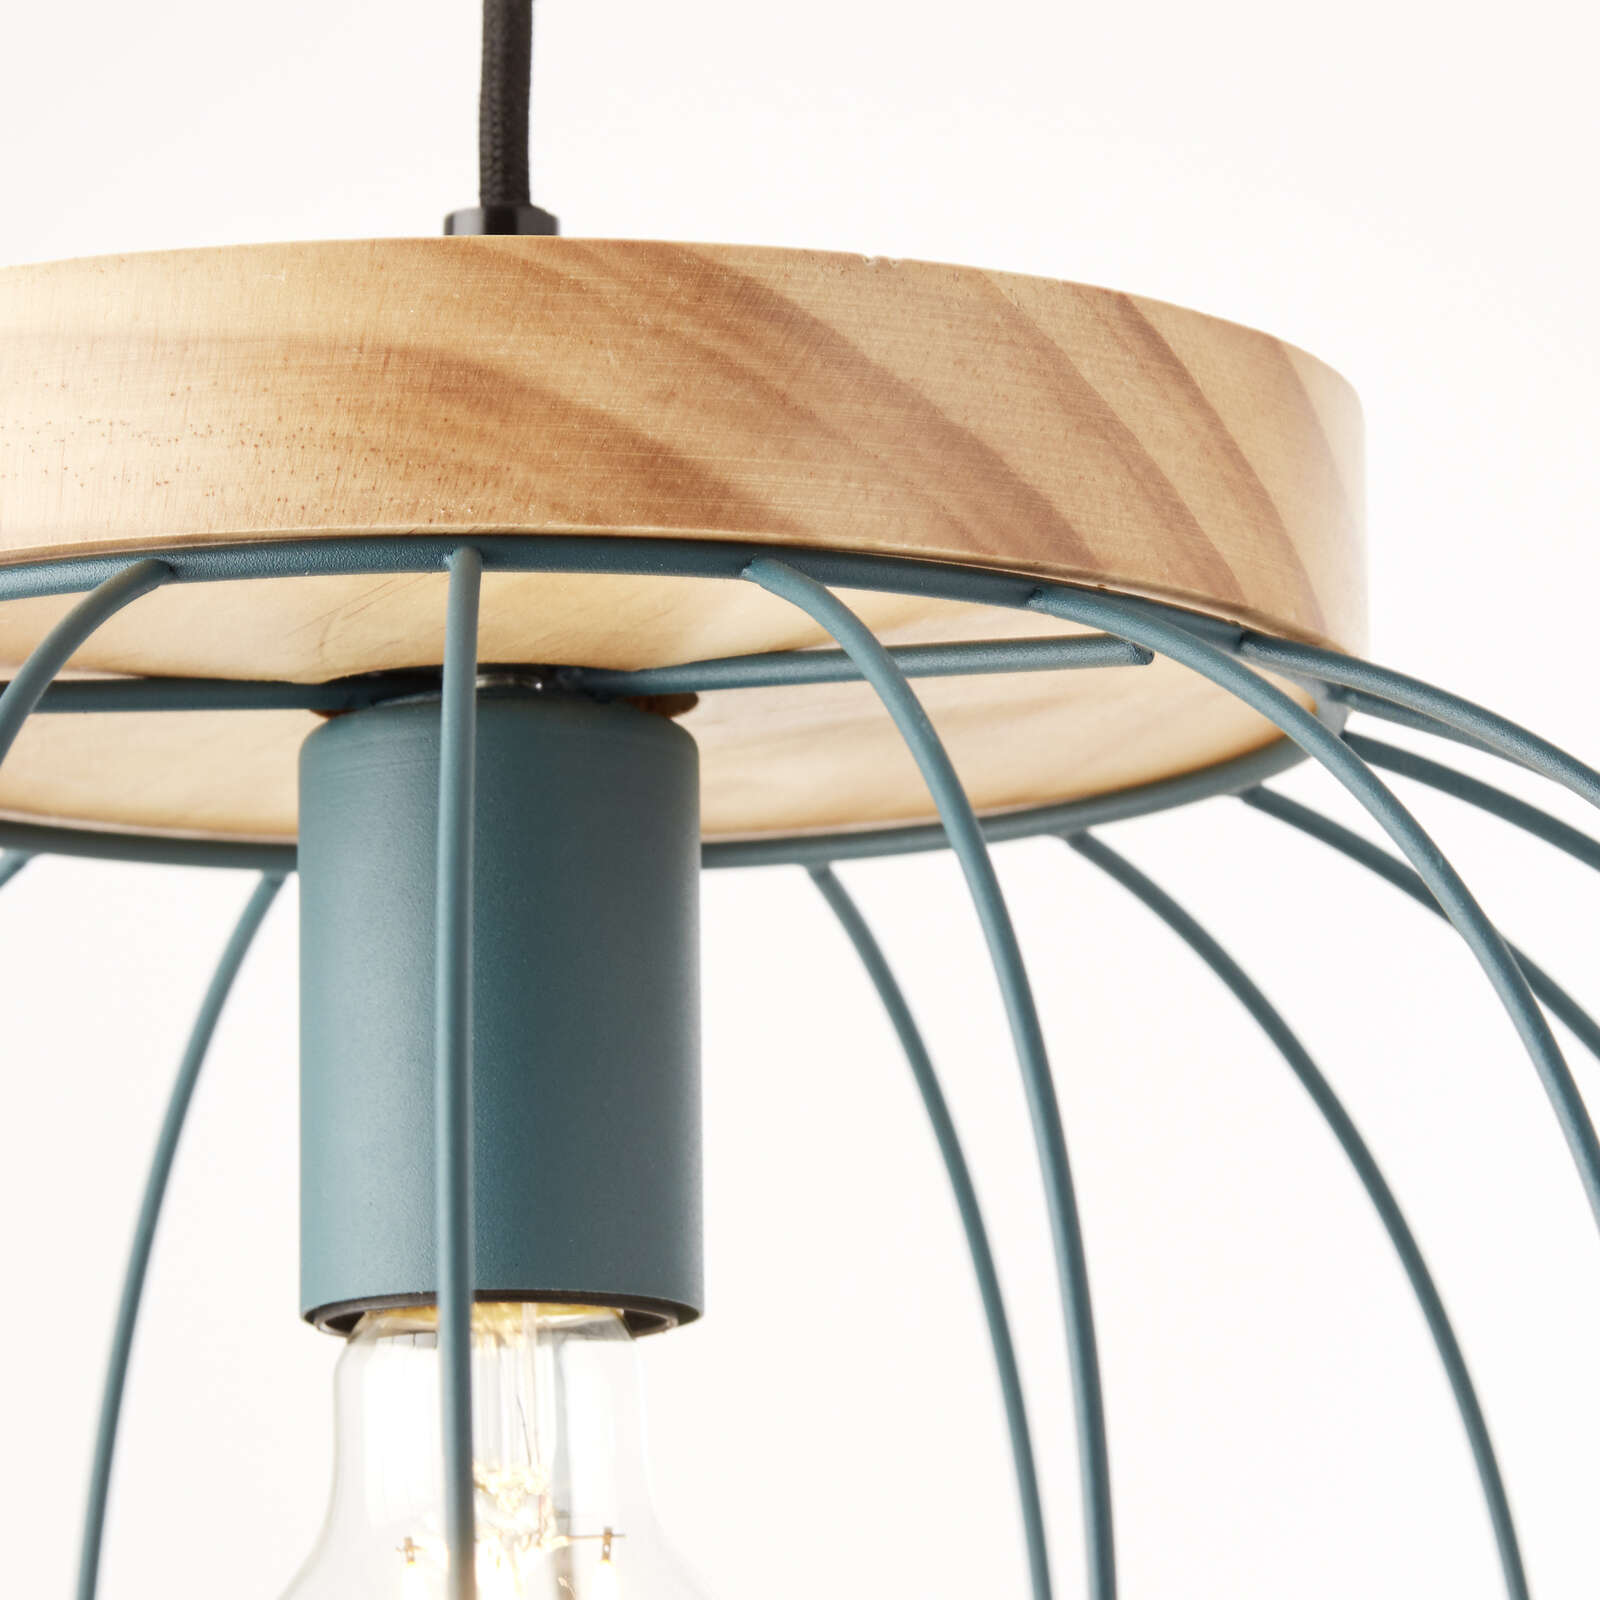             Lámpara colgante de madera - Oliver 1 - Azul
        